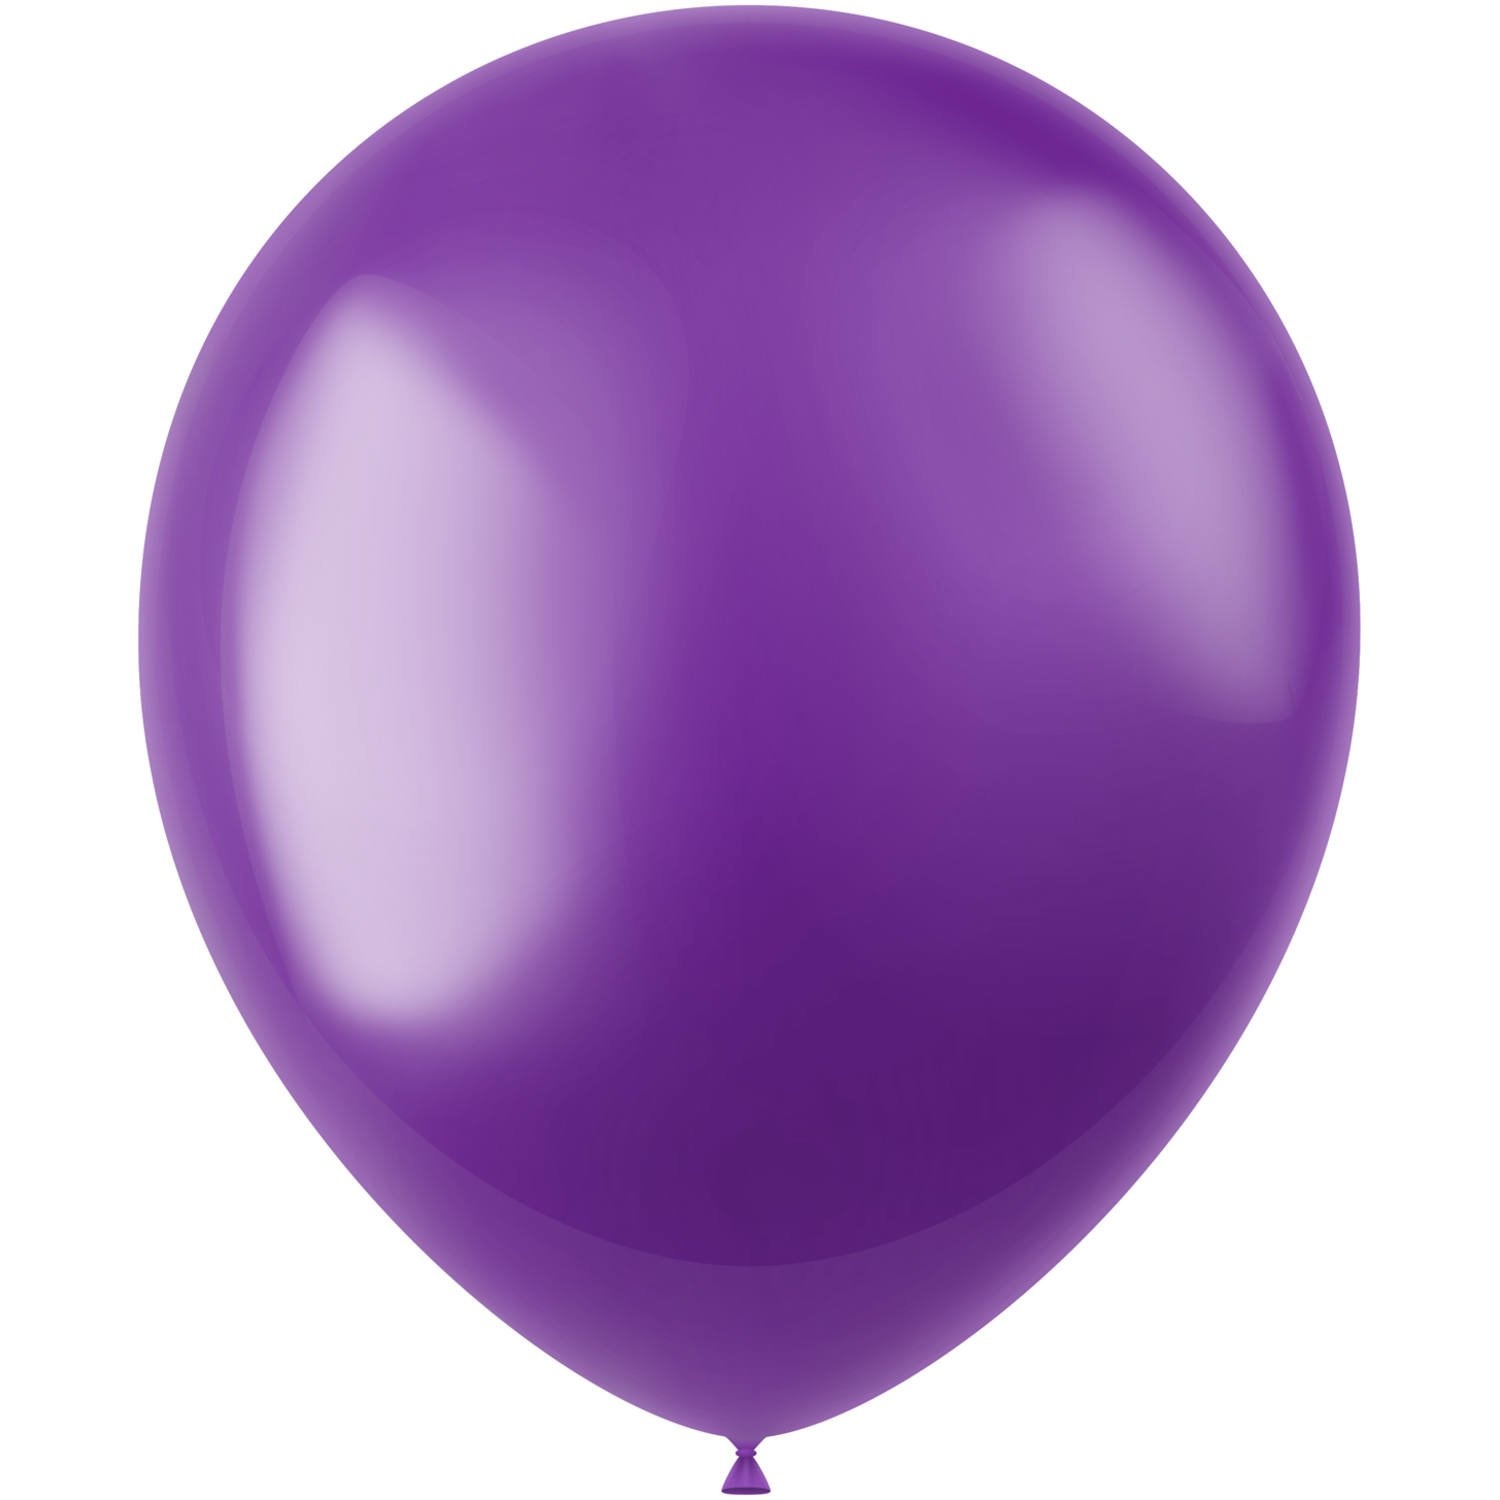 Ballons colorés Noir Or Argent Métallique 33cm 10pcs - Partywinkel